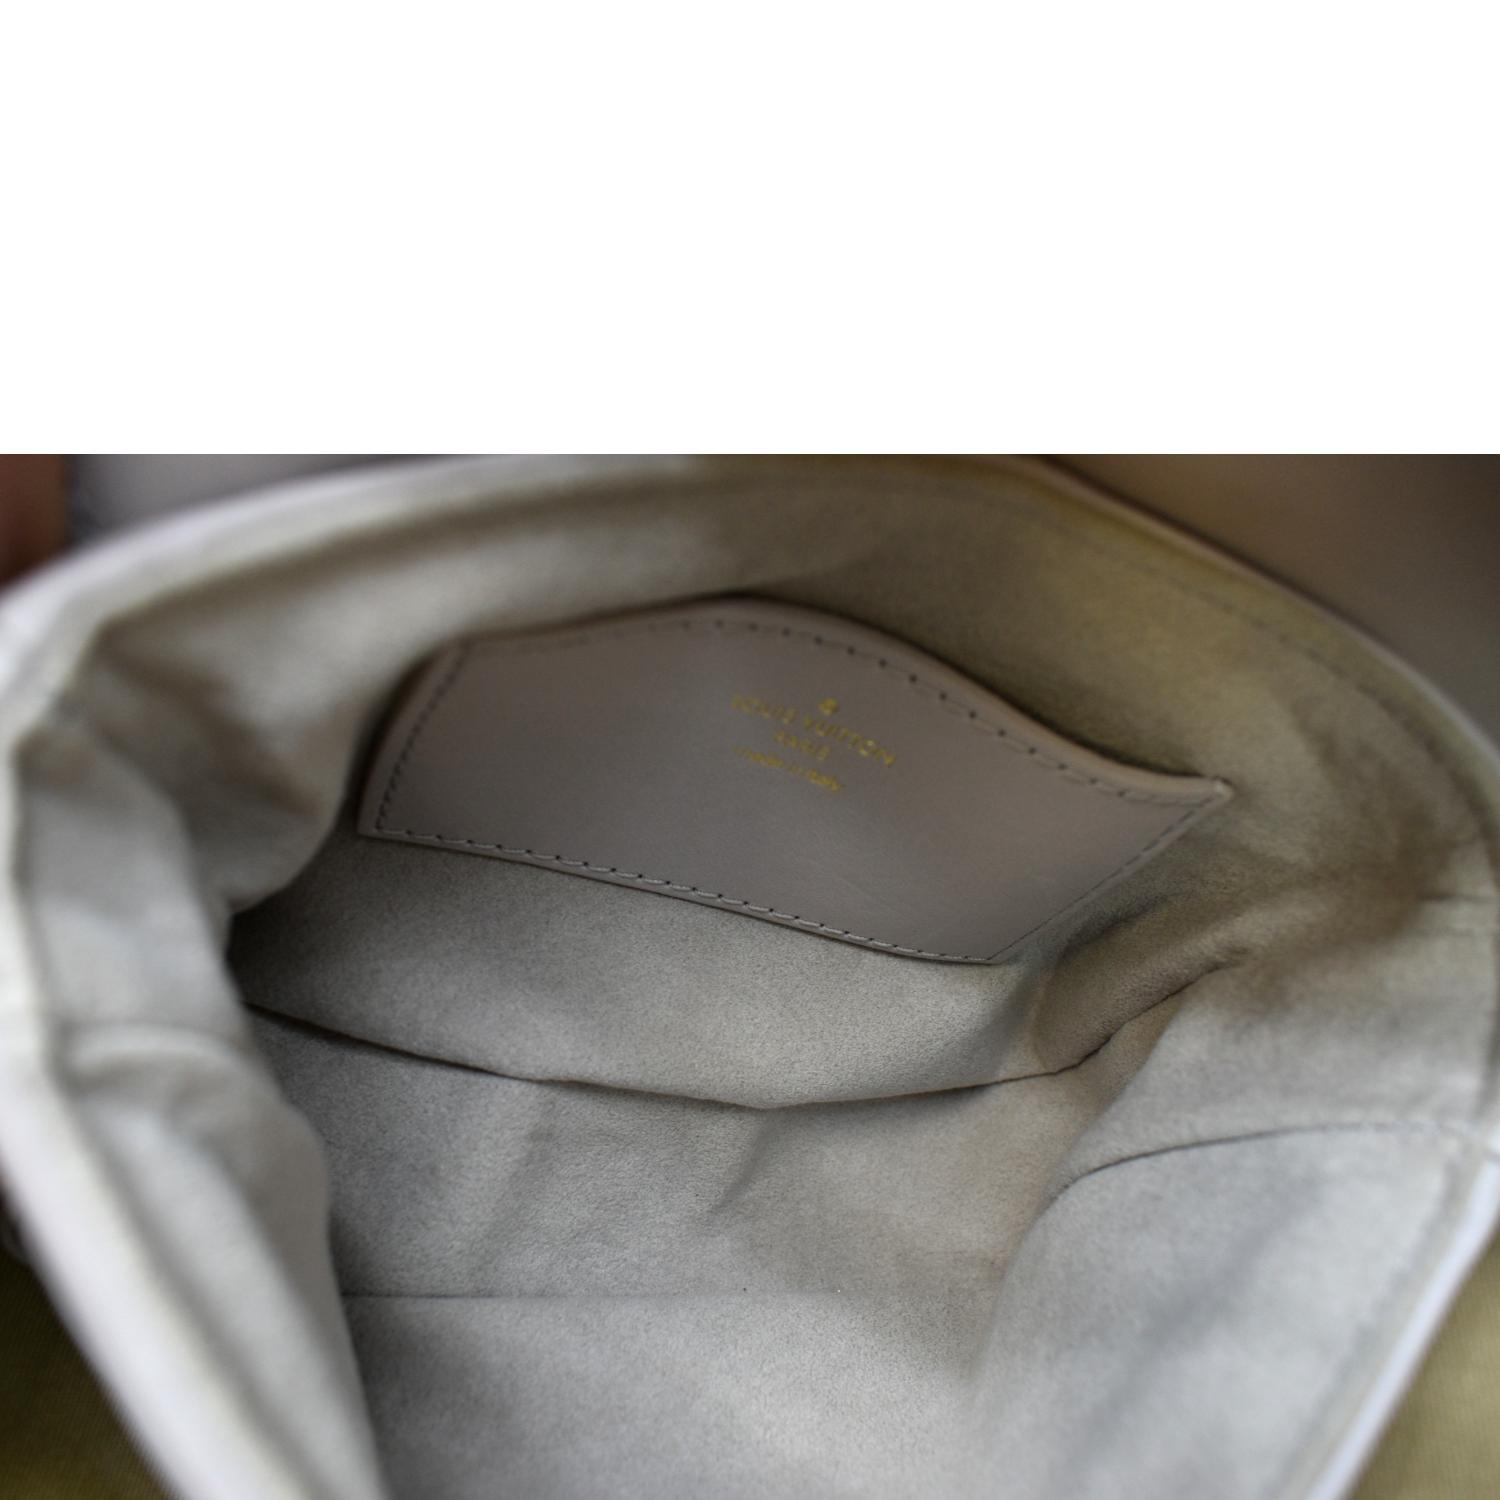 Louis Vuitton Fashion Shoulder LV Bag New Wave Genuine Leather Cross Body  Bag Twin Set Satchel Handbag For Men Presbyopic Mini Package Multi From  Shoulder_hobogt, $77.73